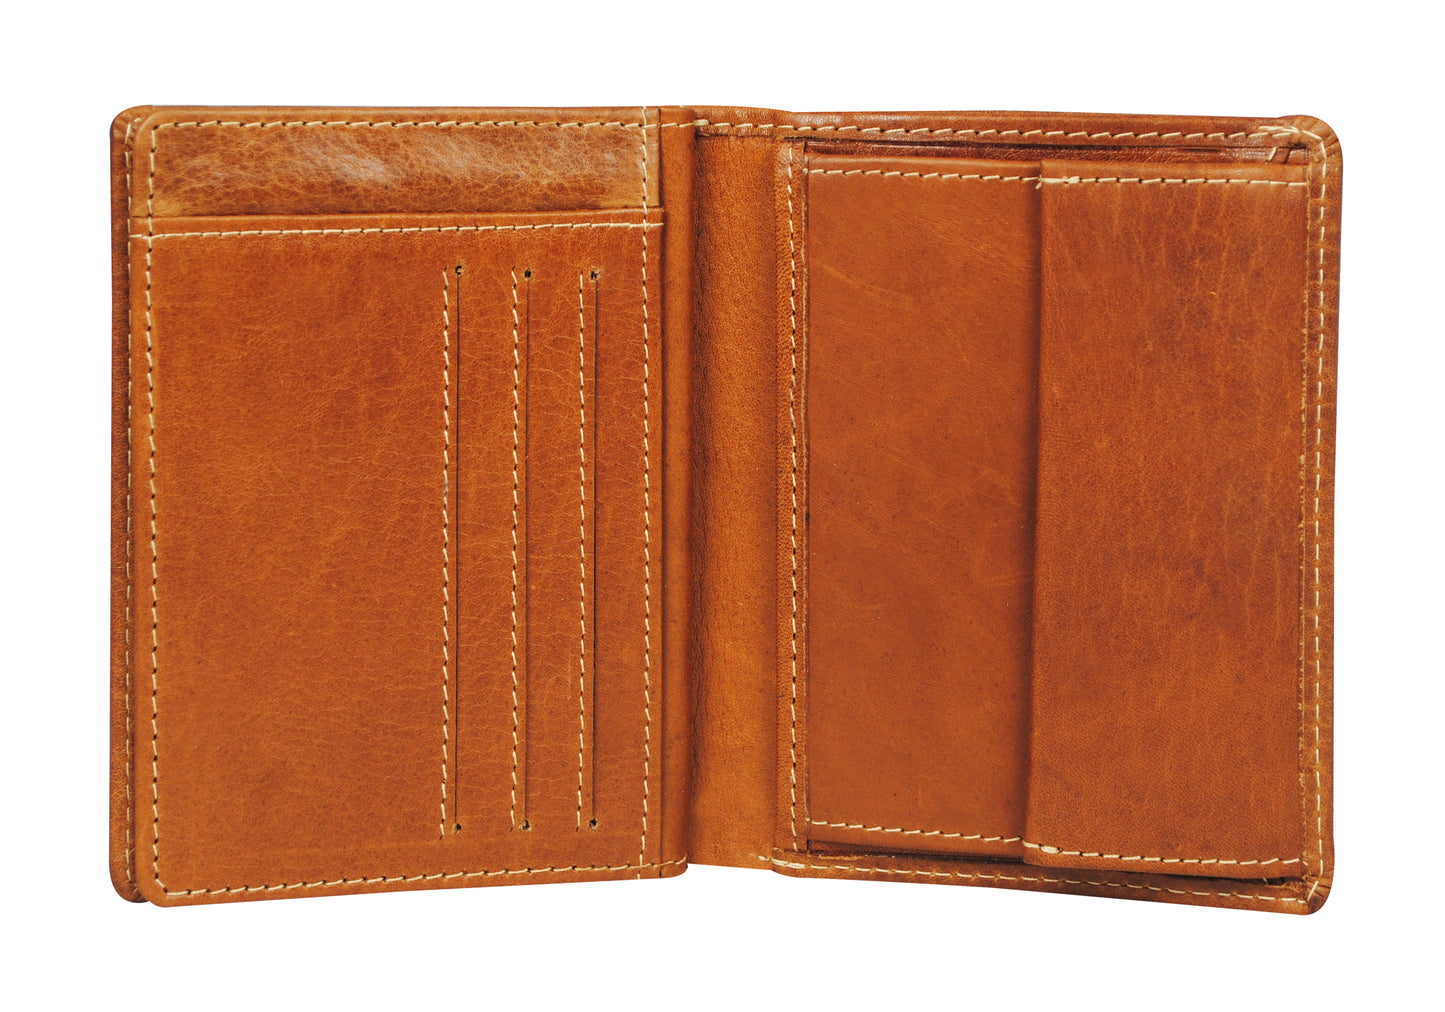 Calfnero Genuine Leather  Men's Wallet (8787-Tan)